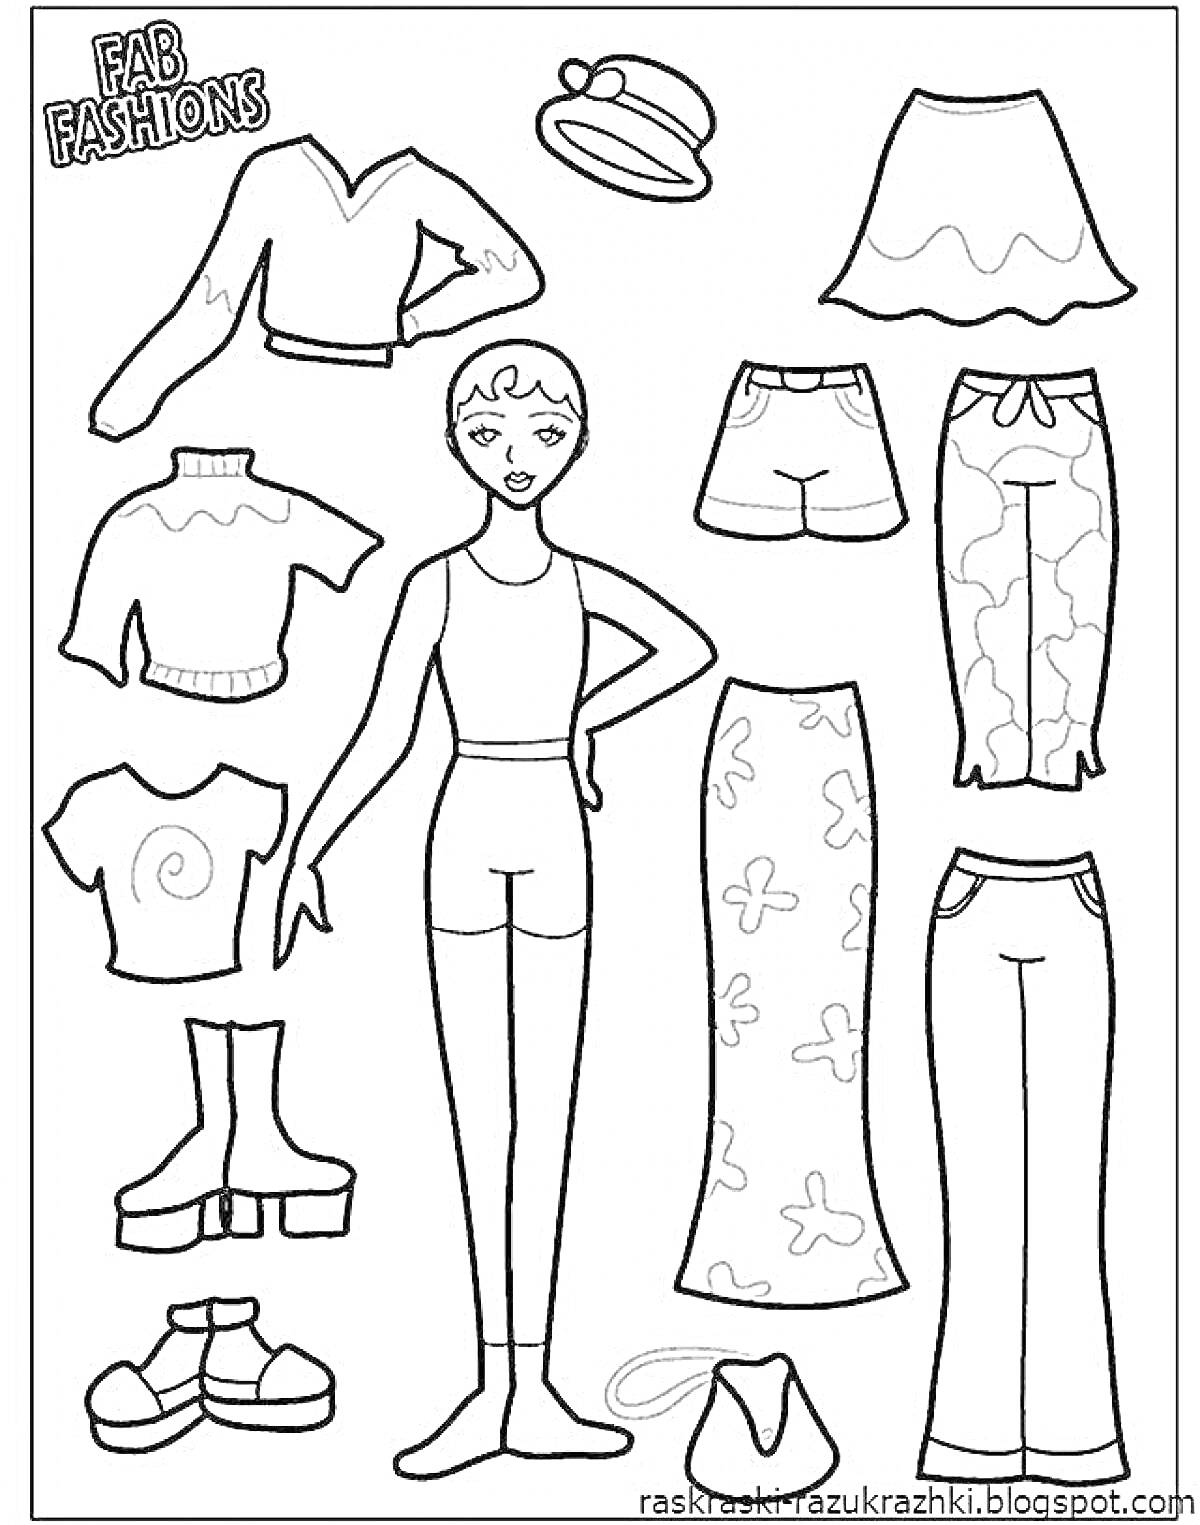 Раскраска Кукла с комплектом одежды и аксессуаров: кофта и юбка, топ и шорты, топ и брюки, кофта с брюками, панама, сапоги и ботинки